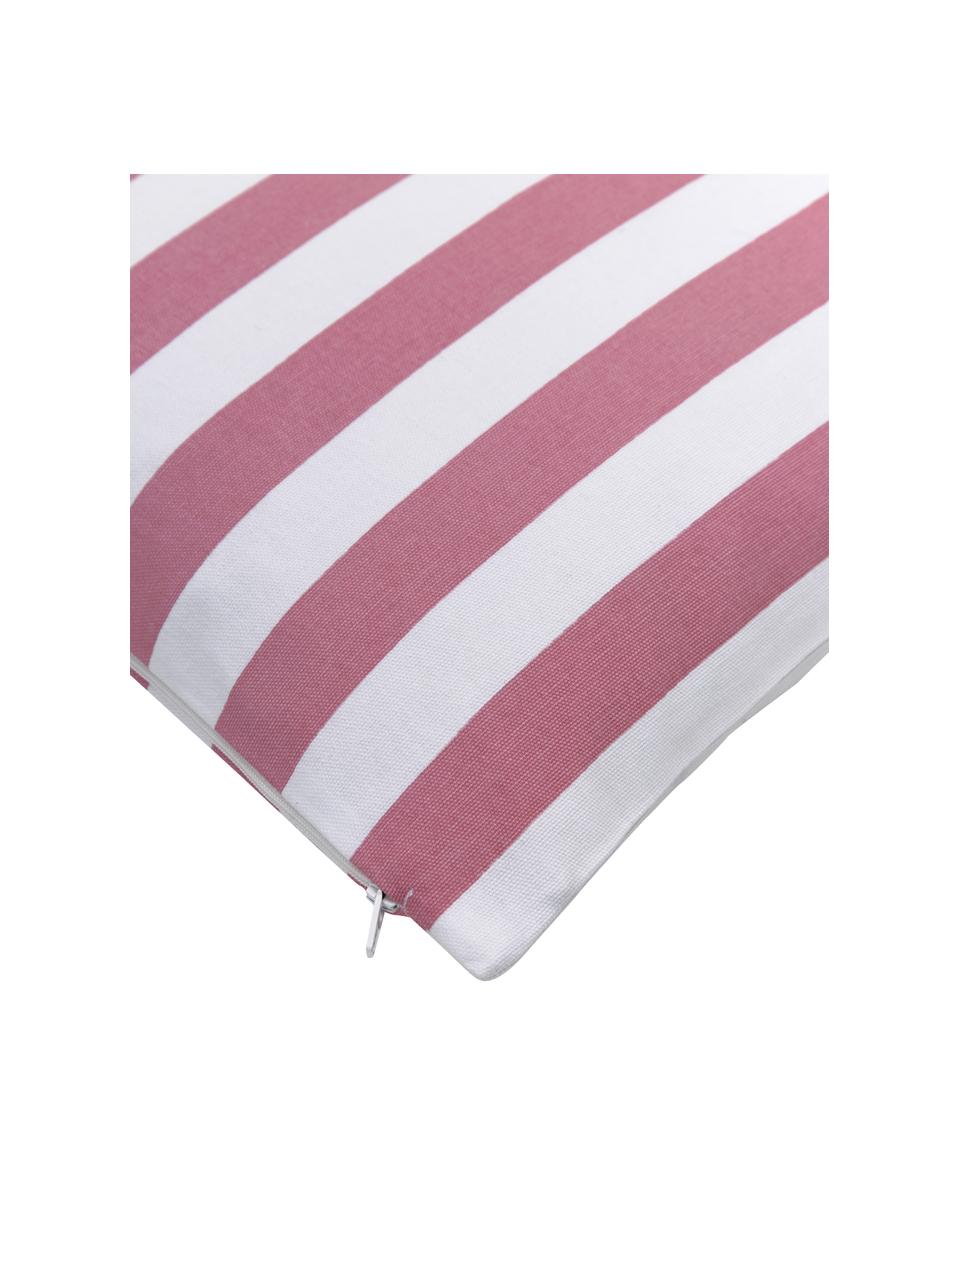 Poszewka na poduszkę Timon, 100% bawełna, Blady różowy, biały, S 40 x D 40 cm